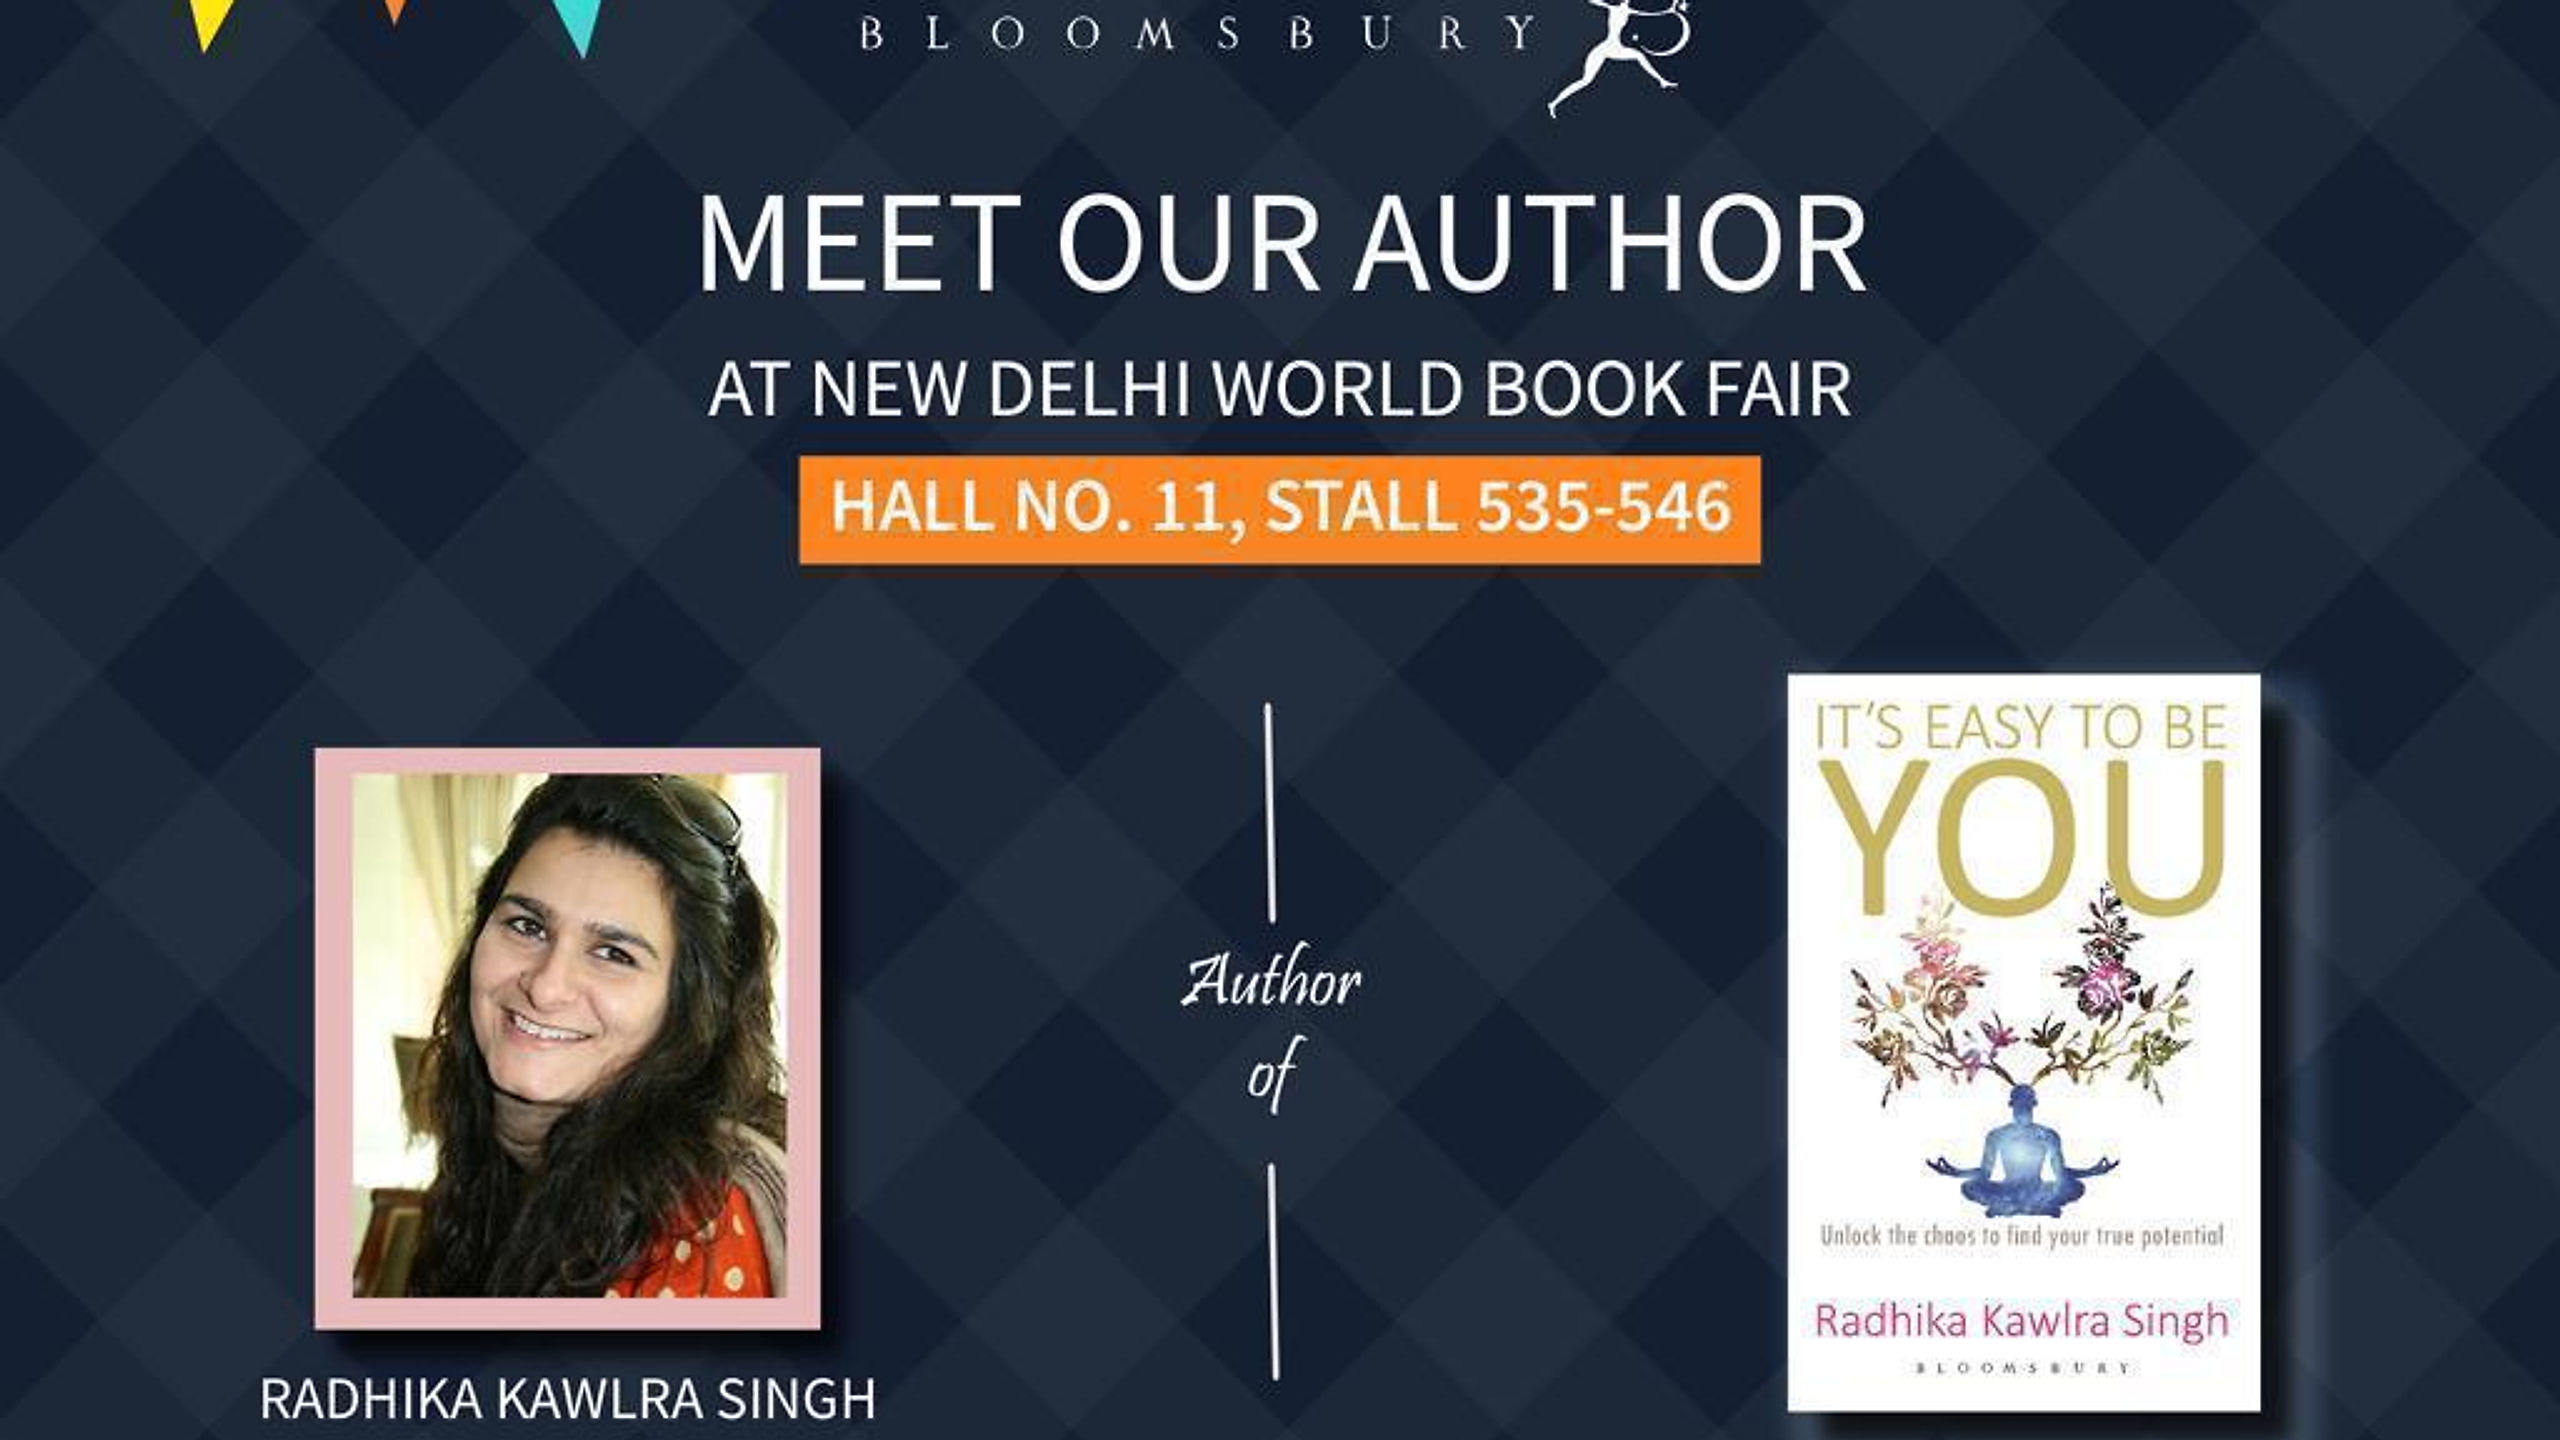 World Book Fair | New Delhi 13th Jan'19